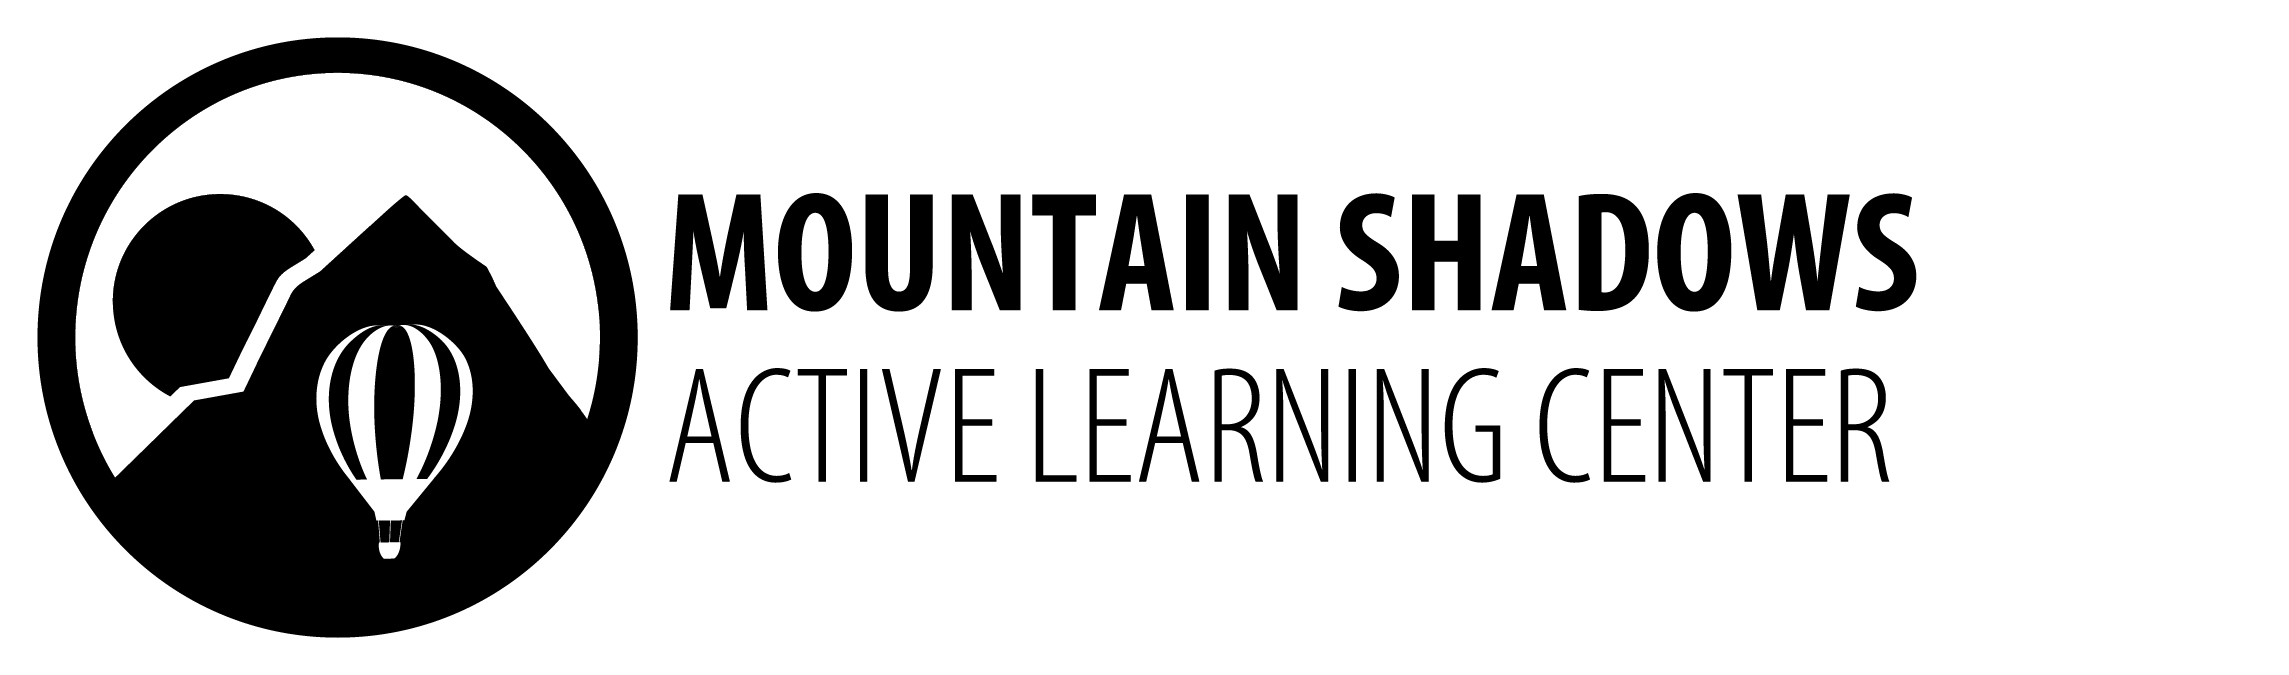 Mountain Shadows Active Learning Center Logo